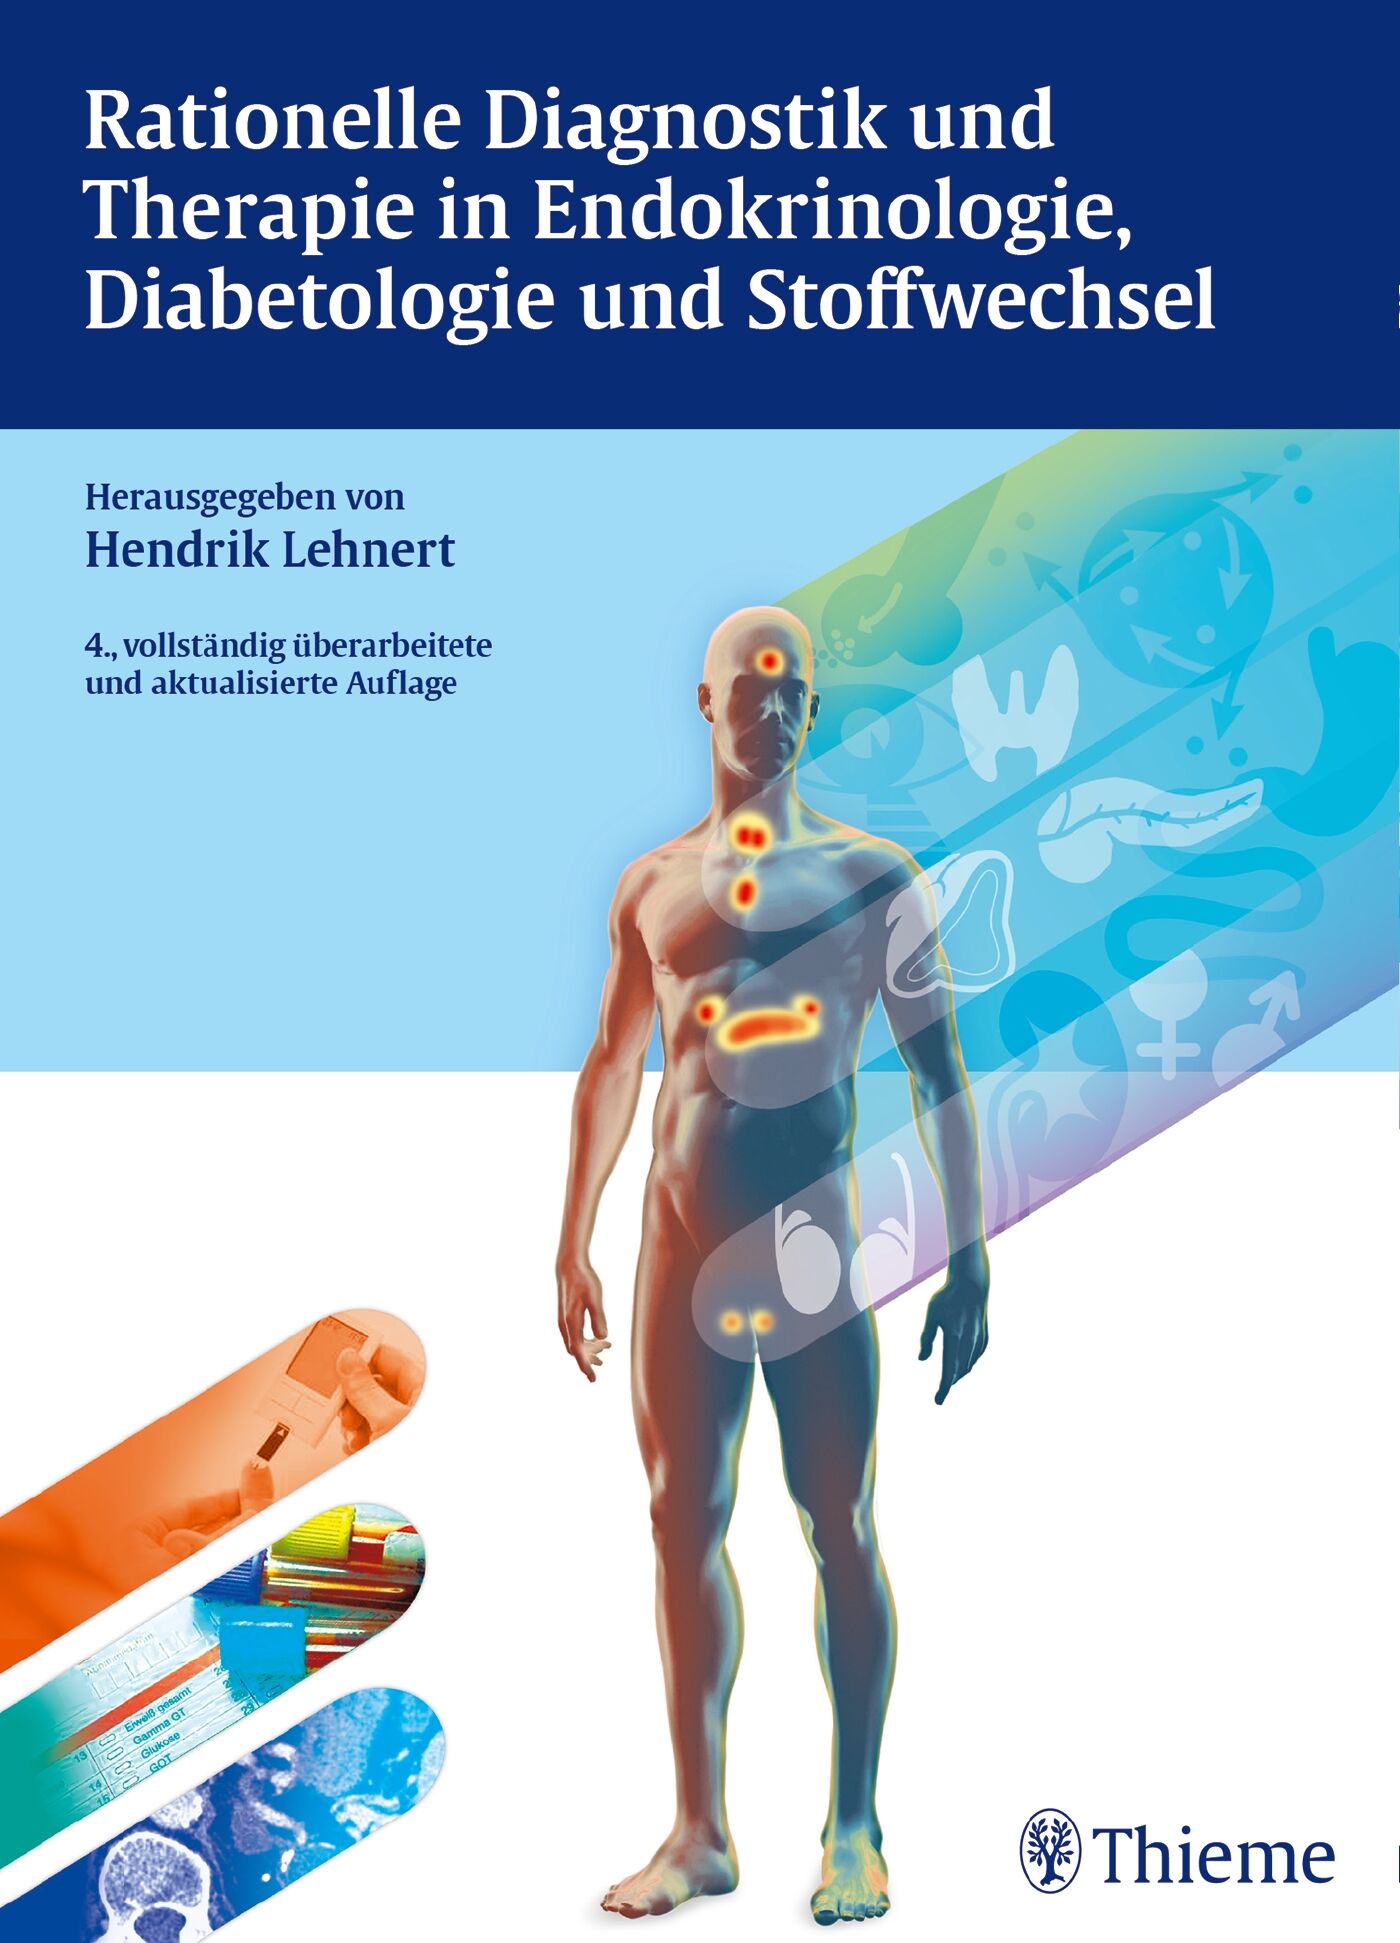 Rationelle Diagnostik und Therapie in Endokrinologie, Diabetologie und Stoffwech, 9783132006447